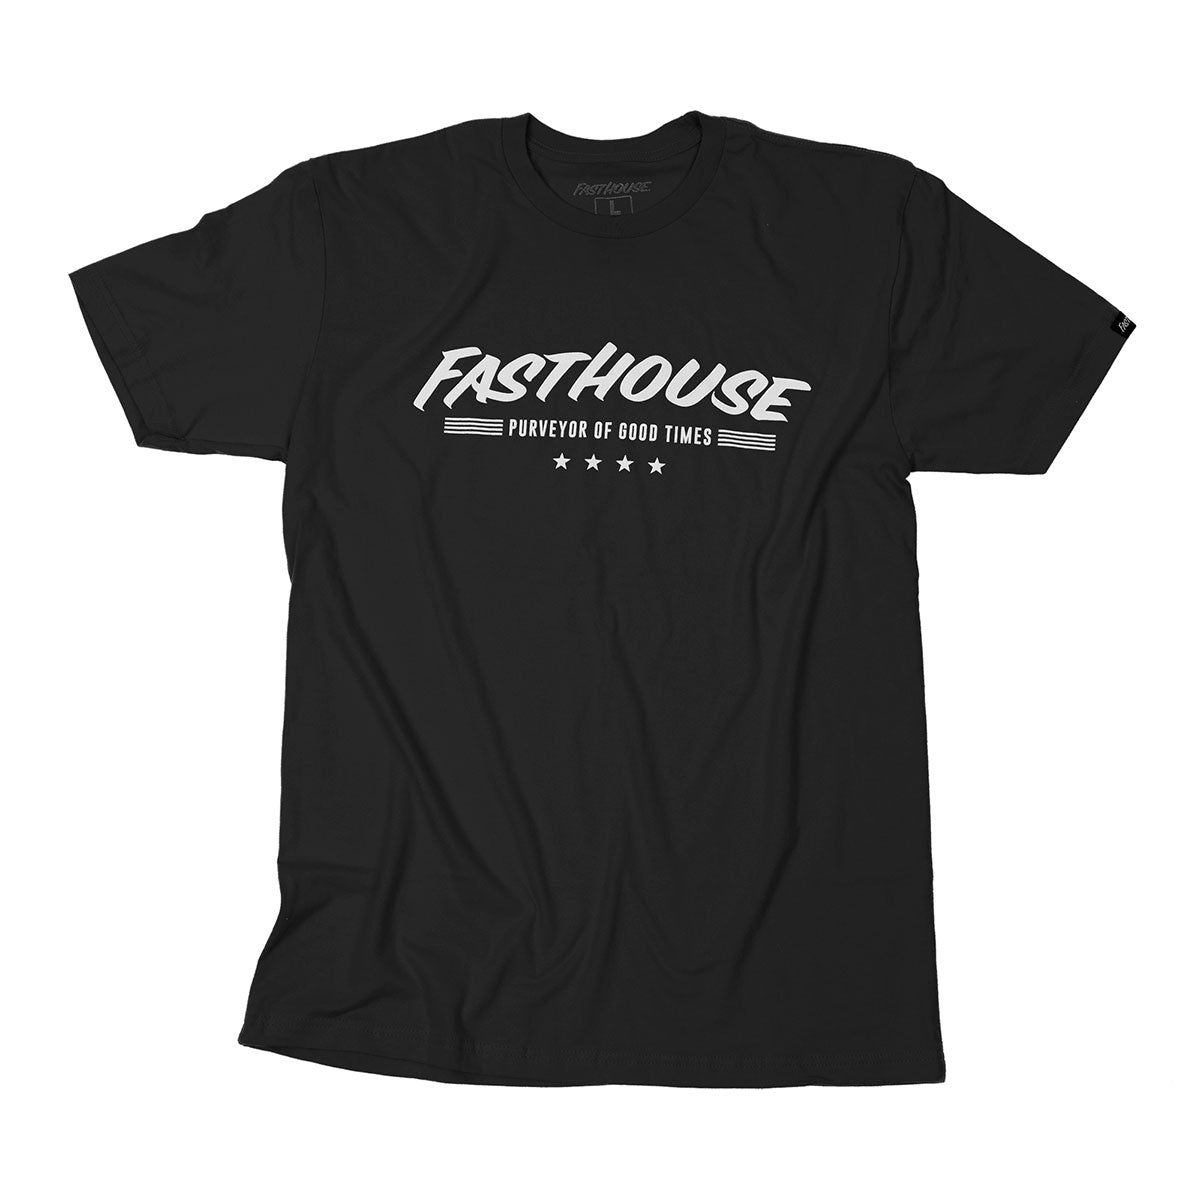 Fasthouse - Four Star Tee - Black/White